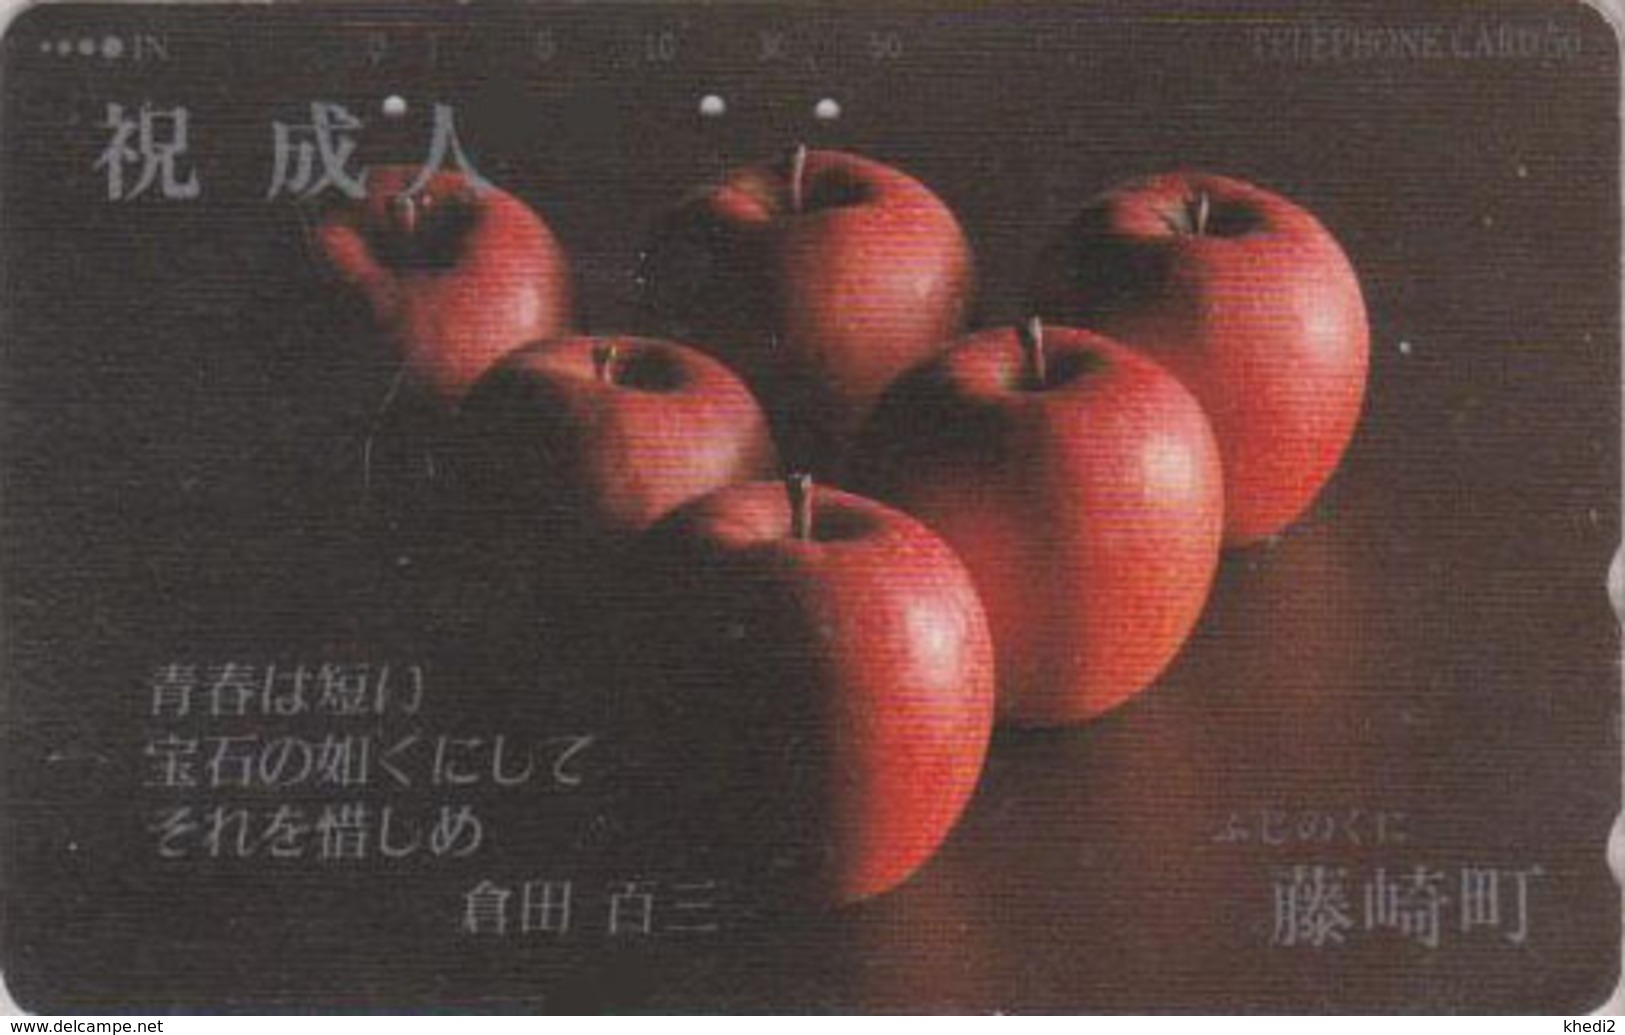 Télécarte Japon / 110-699 - Fruit Pomme - Apple Japan  Phonecard - Apfel Obst Telefonkarte - MD 75 - Food